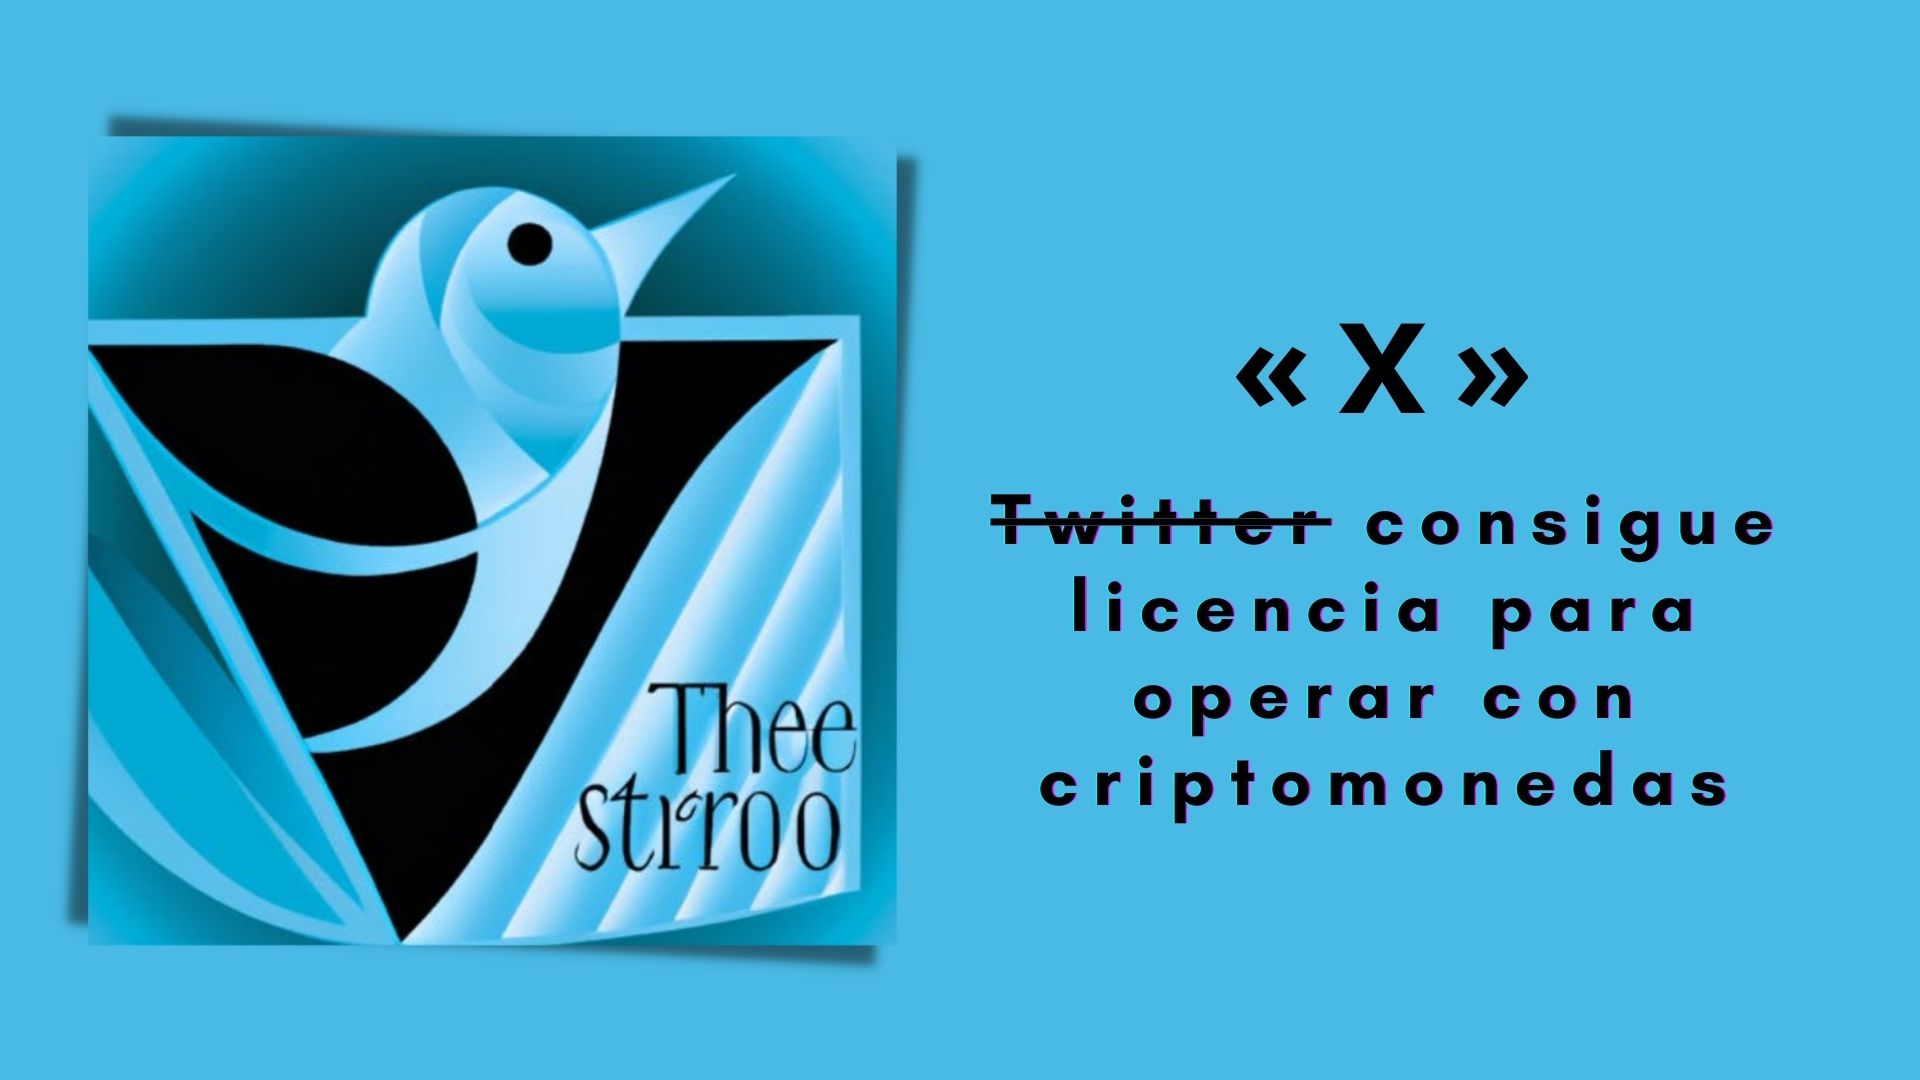 Twitter X consigue licencia para operar con criptomonedas.